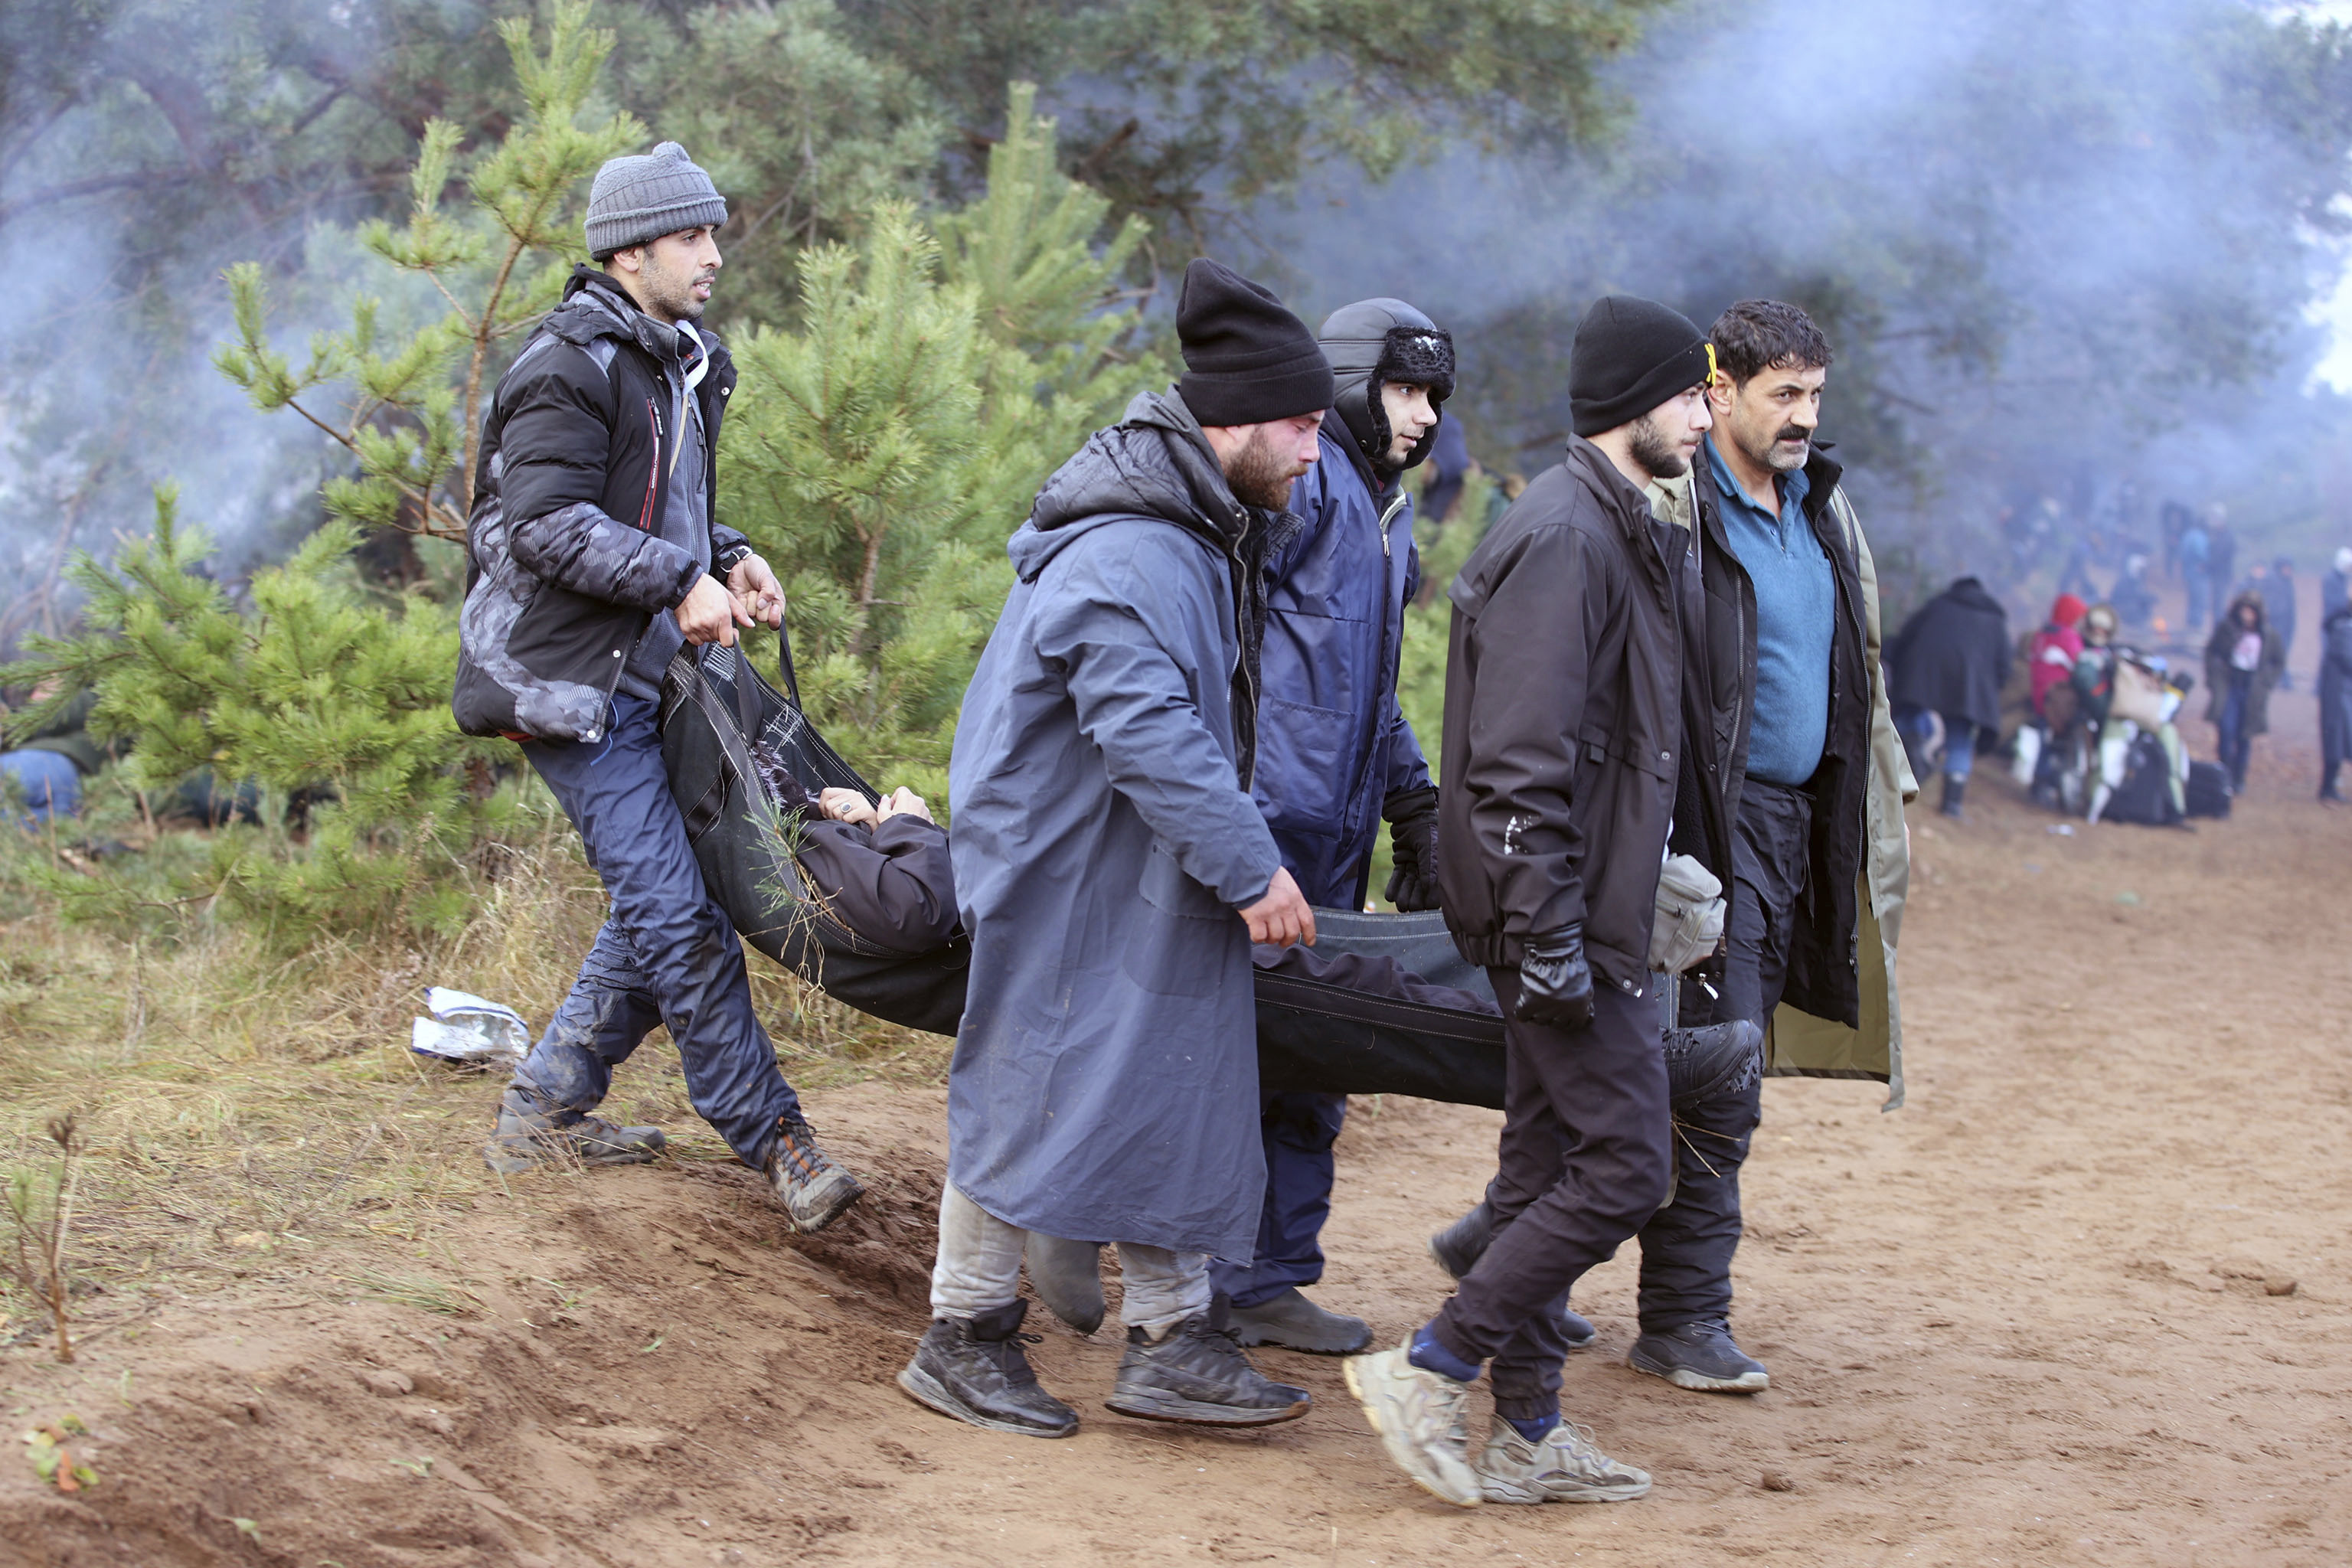 Un grupo de migrantes cargan con su amigo enfermo cerca de la frontera (Leonid Shcheglov/BelTA via AP)